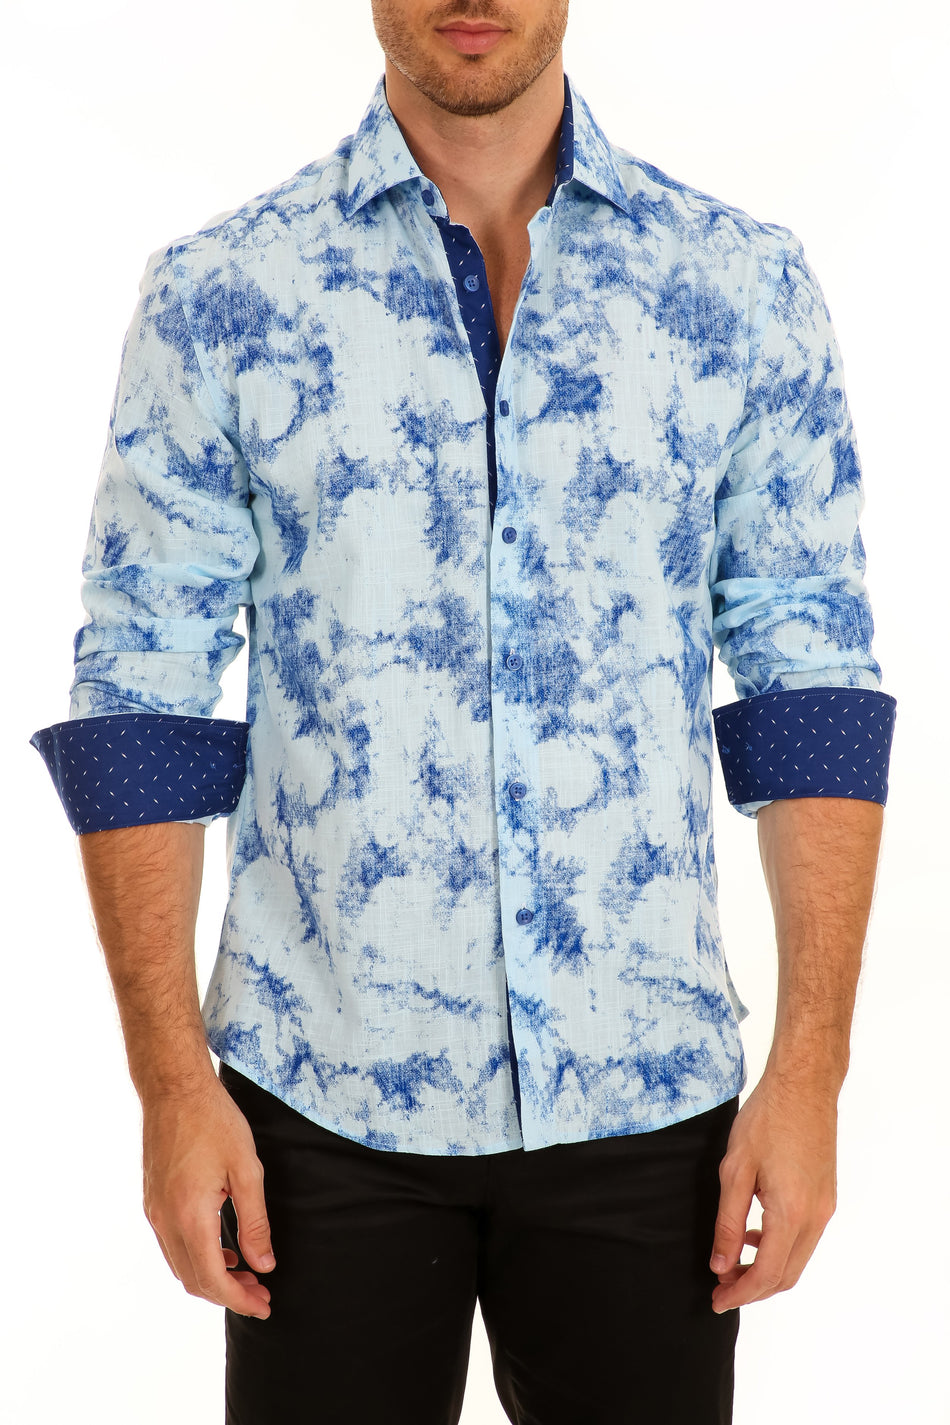 Splashed Linen Texture Print Long Sleeve Dress Shirt Blue